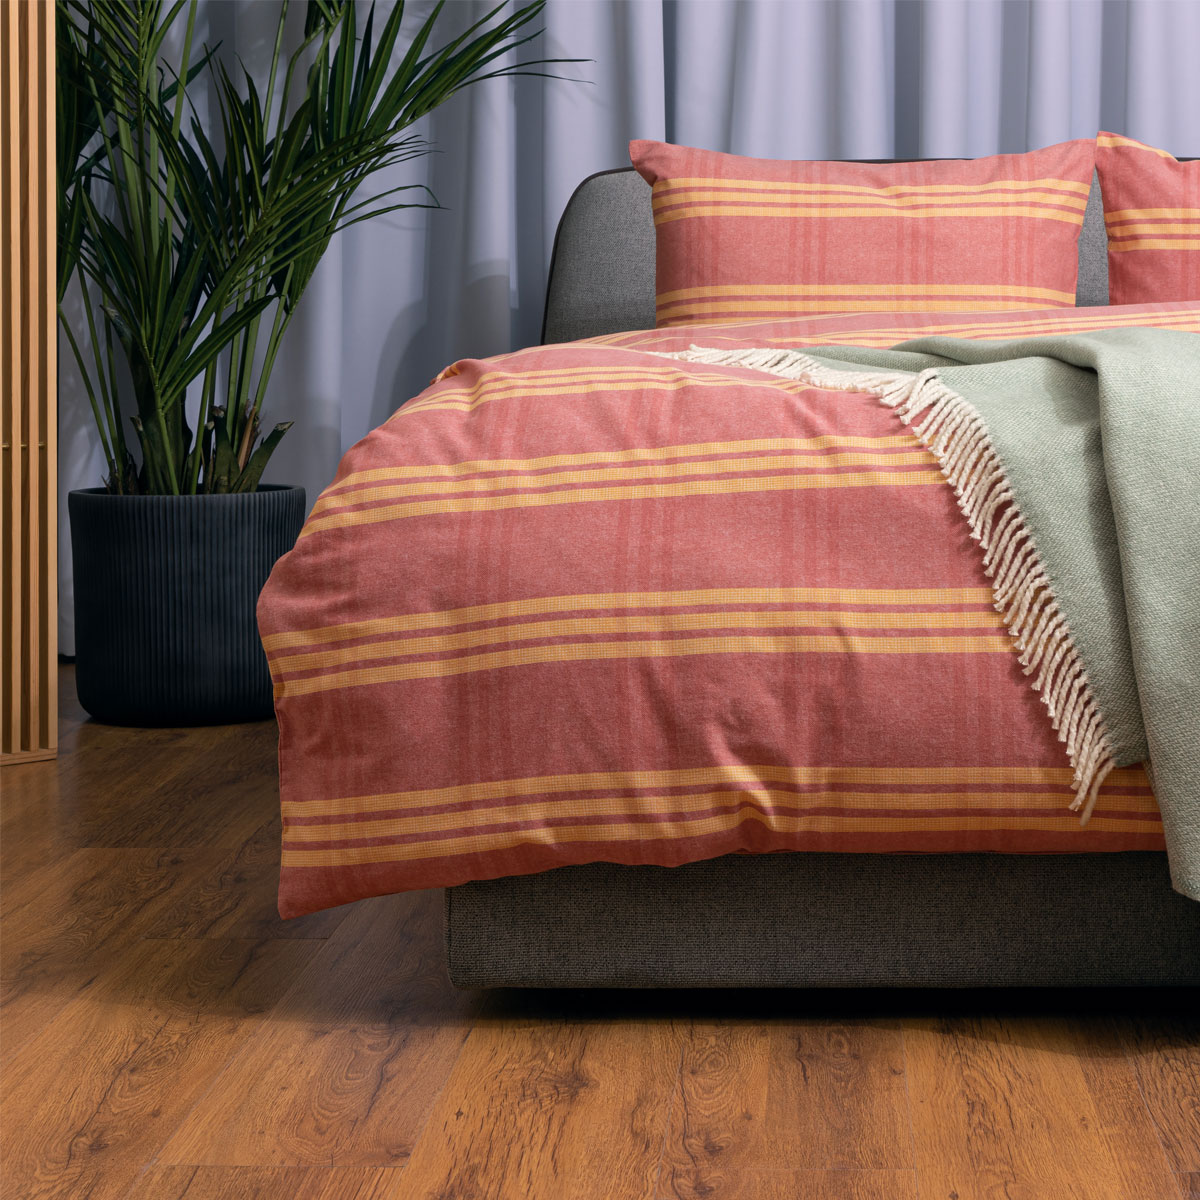 Комплект постельного белья 1,5-спальный Pappel red-yellow stripe Pappel SYXUR355AMT/150200S, цвет розовый